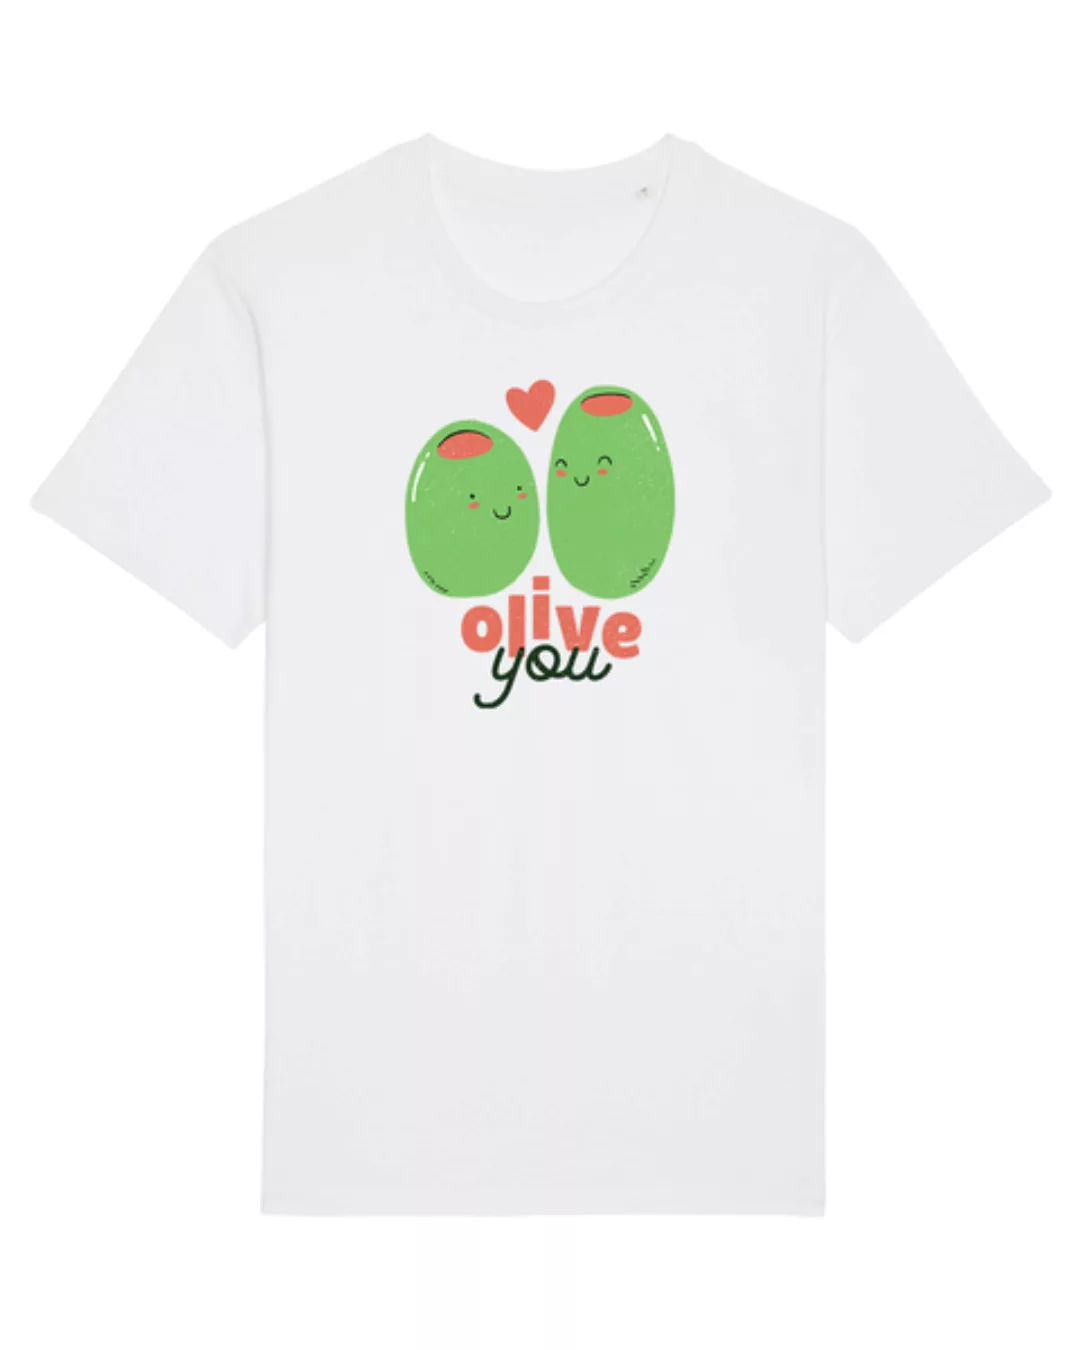 Olive You | T-shirt Unisex günstig online kaufen